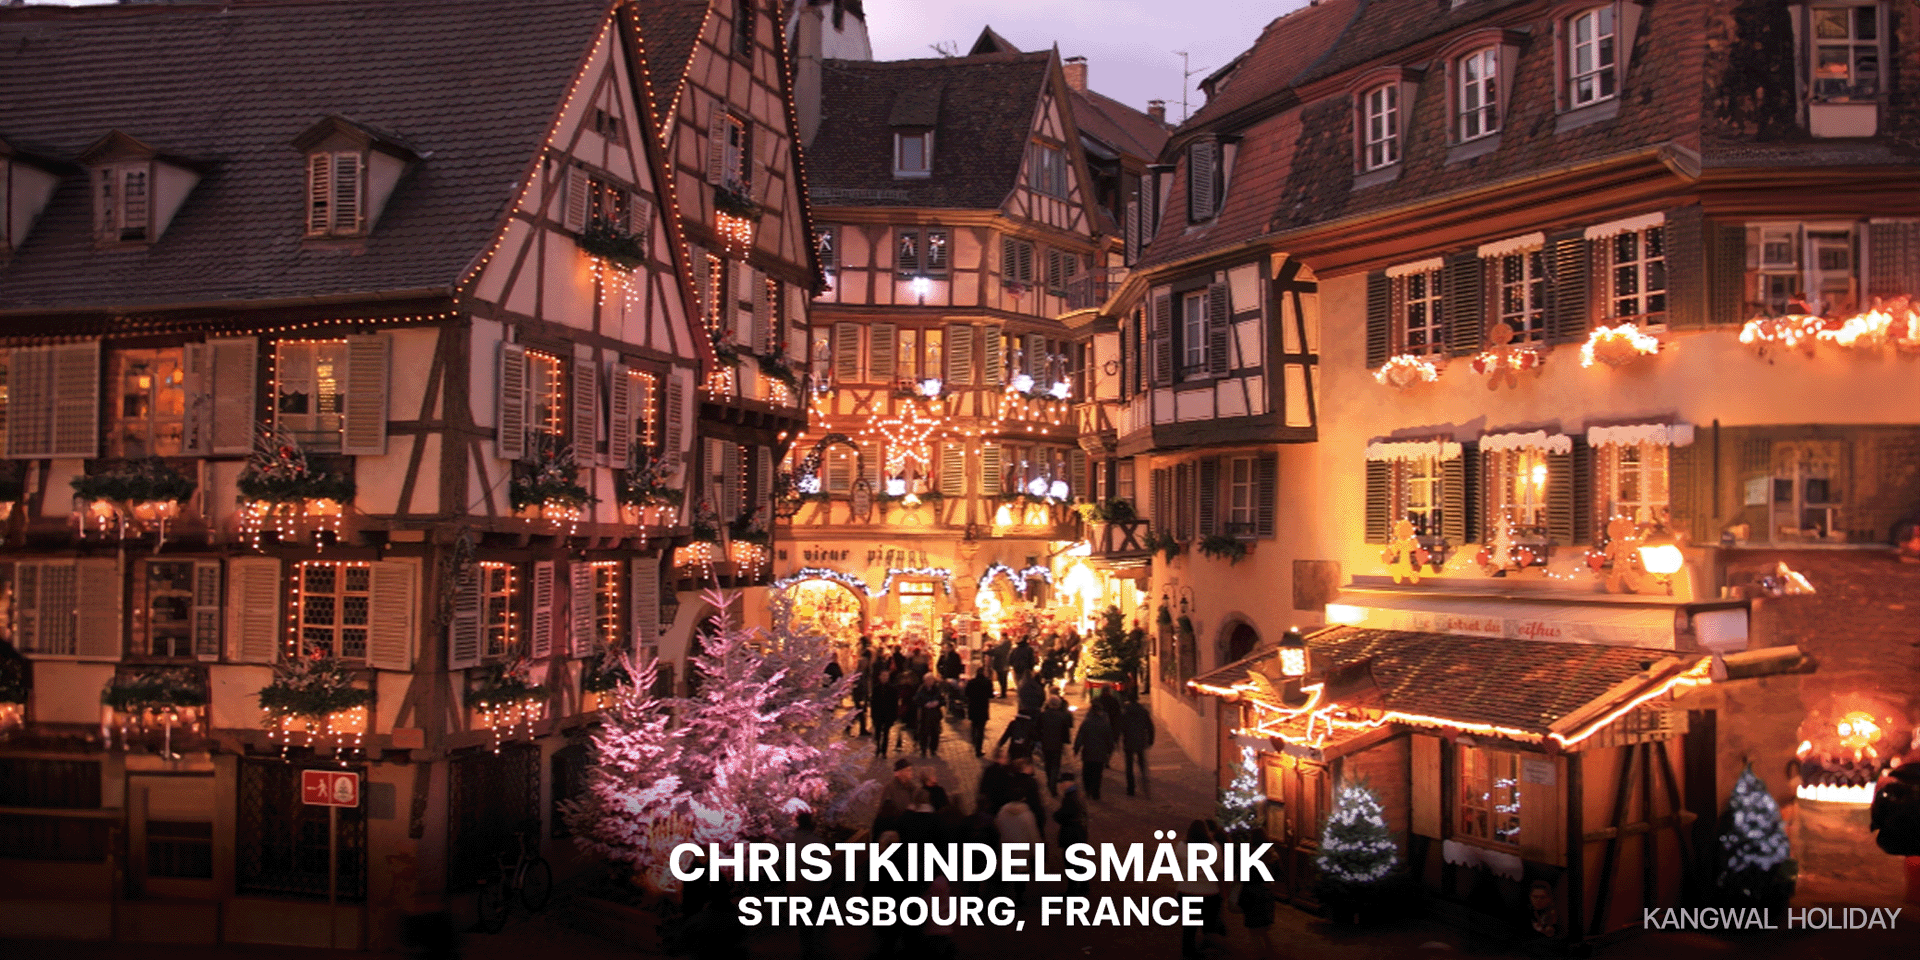 Christkindelsmarik: Strasbourg, France